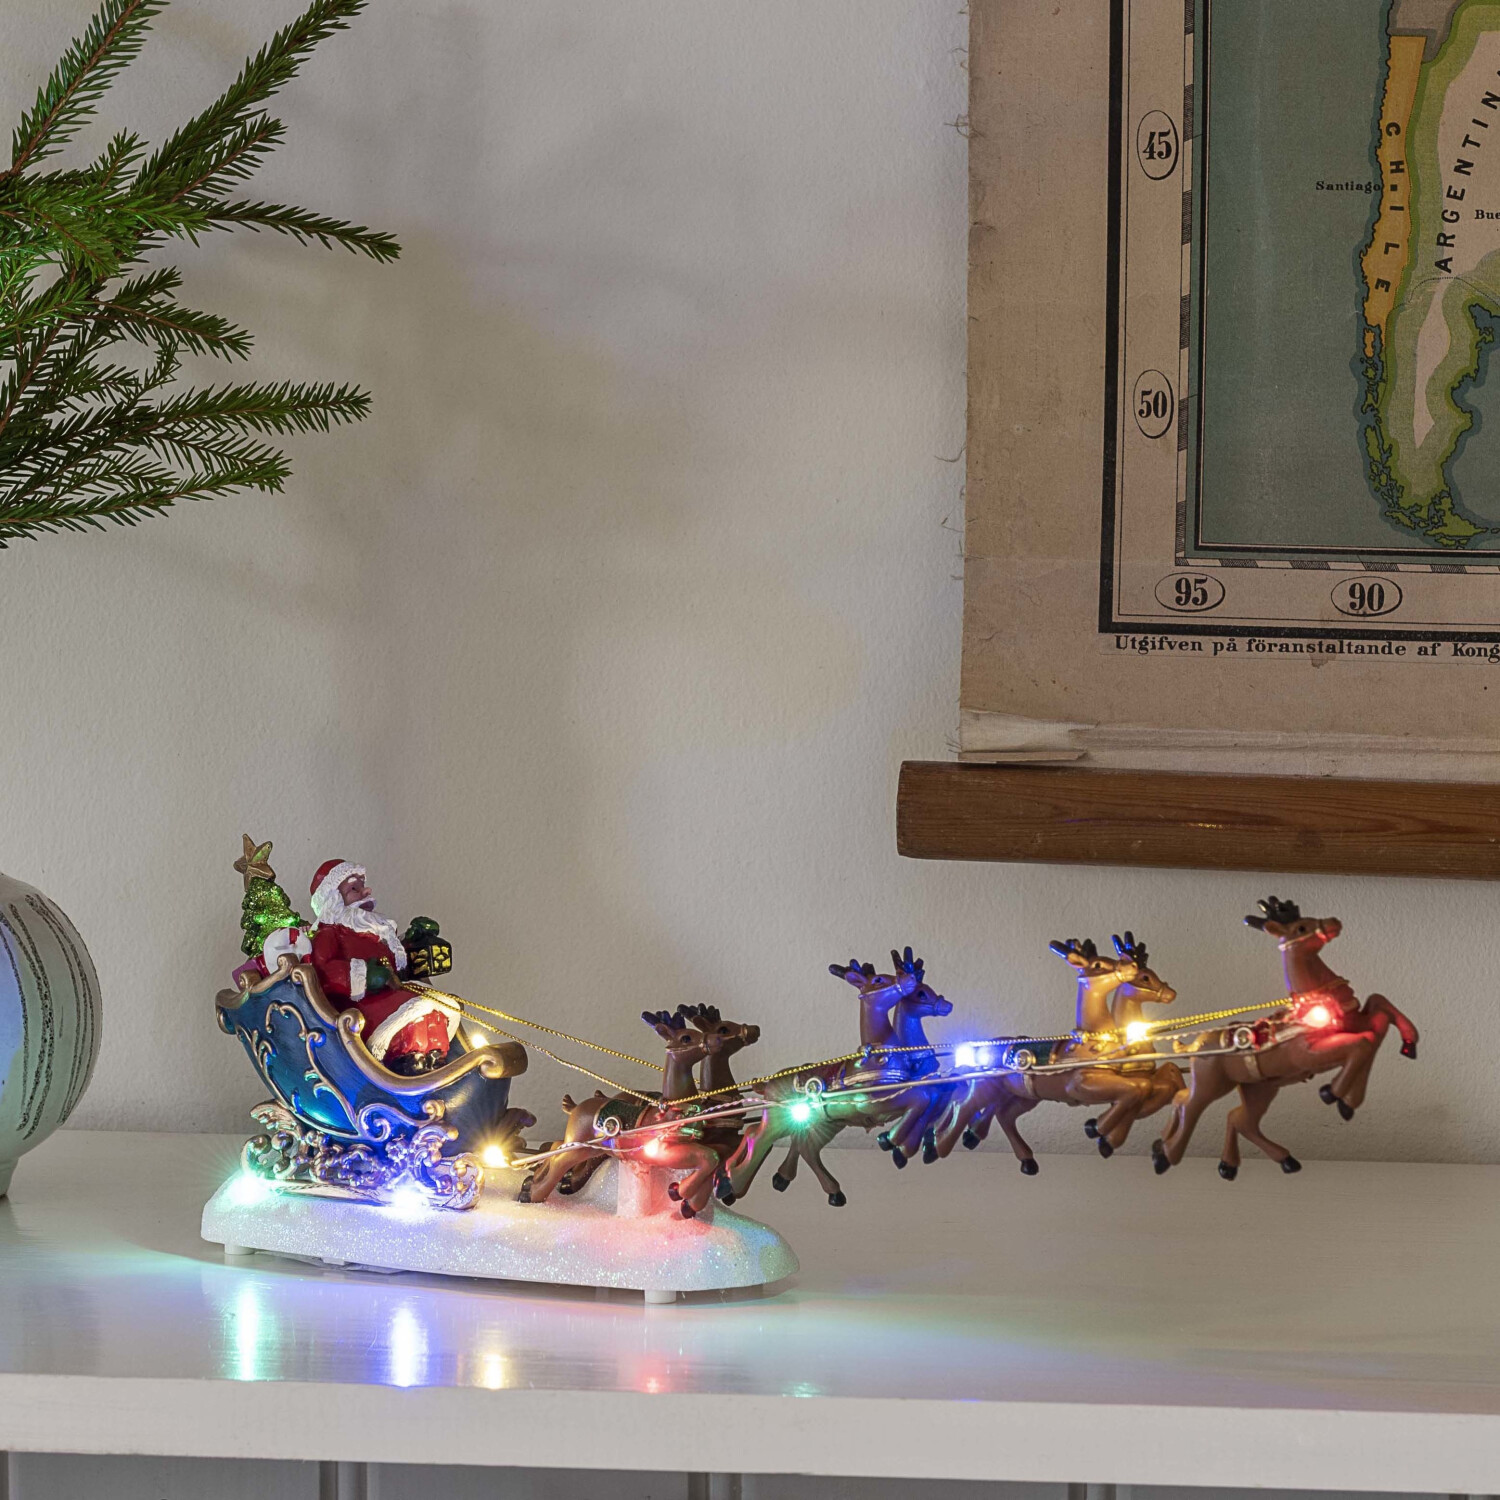 Weihnachtsmann mit Schlitten | Preisvergleich Konstsmide LED-Szenerie 21,40 (4205-000) bei € ab